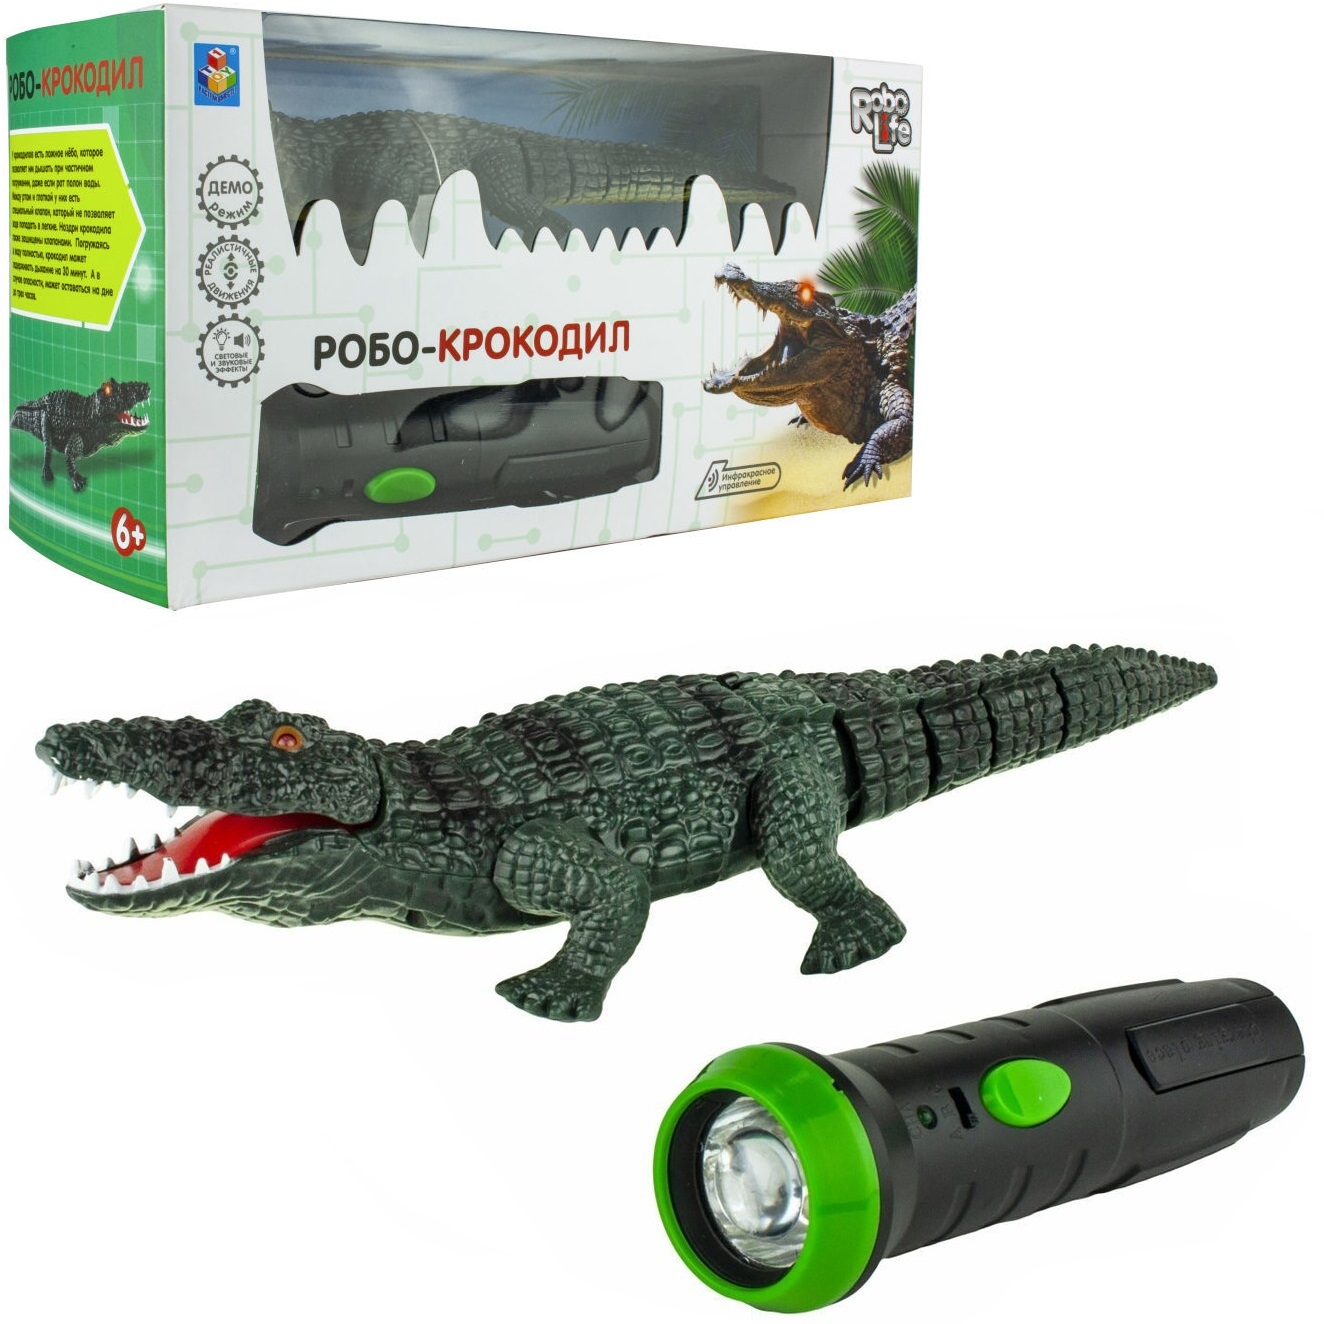 Игрушка робо-крокодил на ик пульт управ (звук, свет, движение), кор. 14*26*10 см